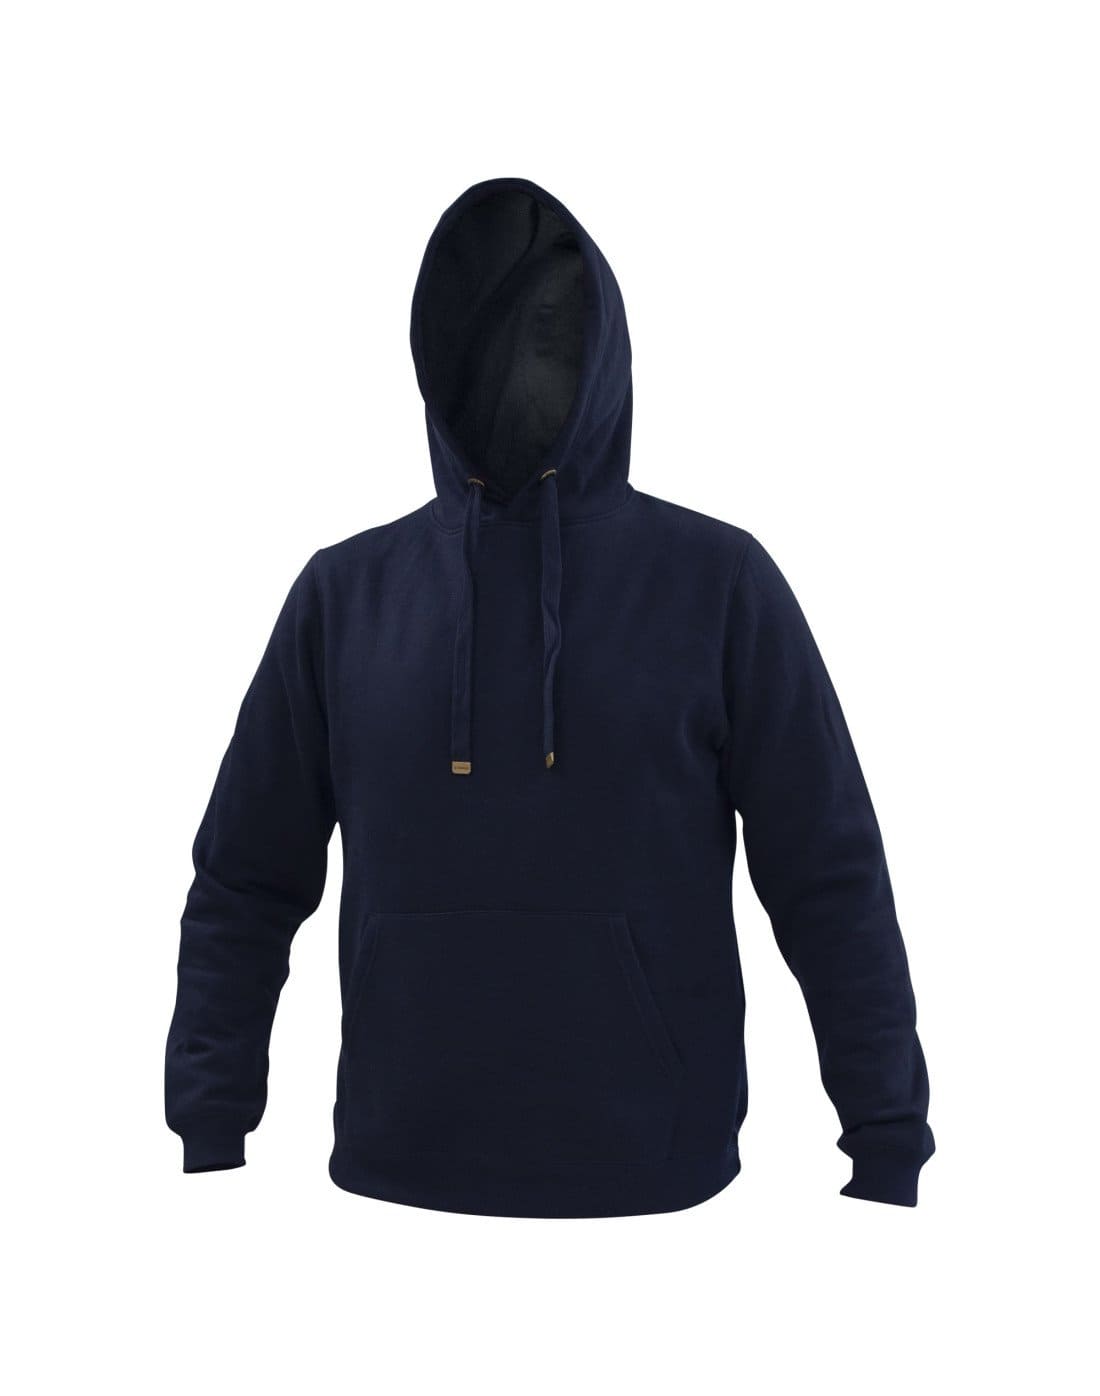 Polerón Azul canguro hoodie de TEAMGRAFF, estilo urbano con comodidad superior, ideal para el día a día y aventuras al aire libre